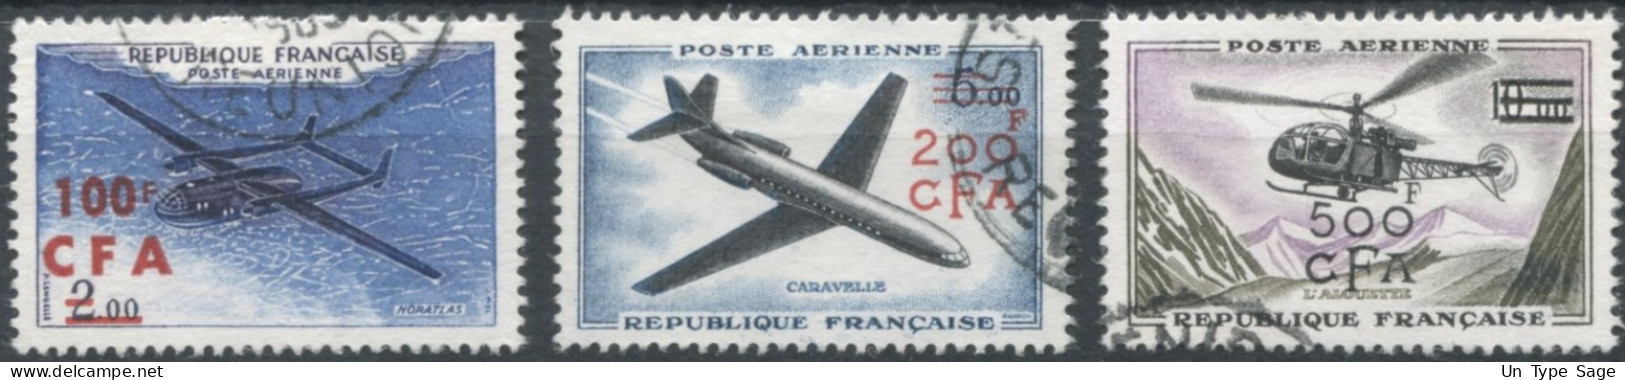 Réunion Poste Aérienne N°58 à 60 - Oblitérés - (F1589) - Poste Aérienne